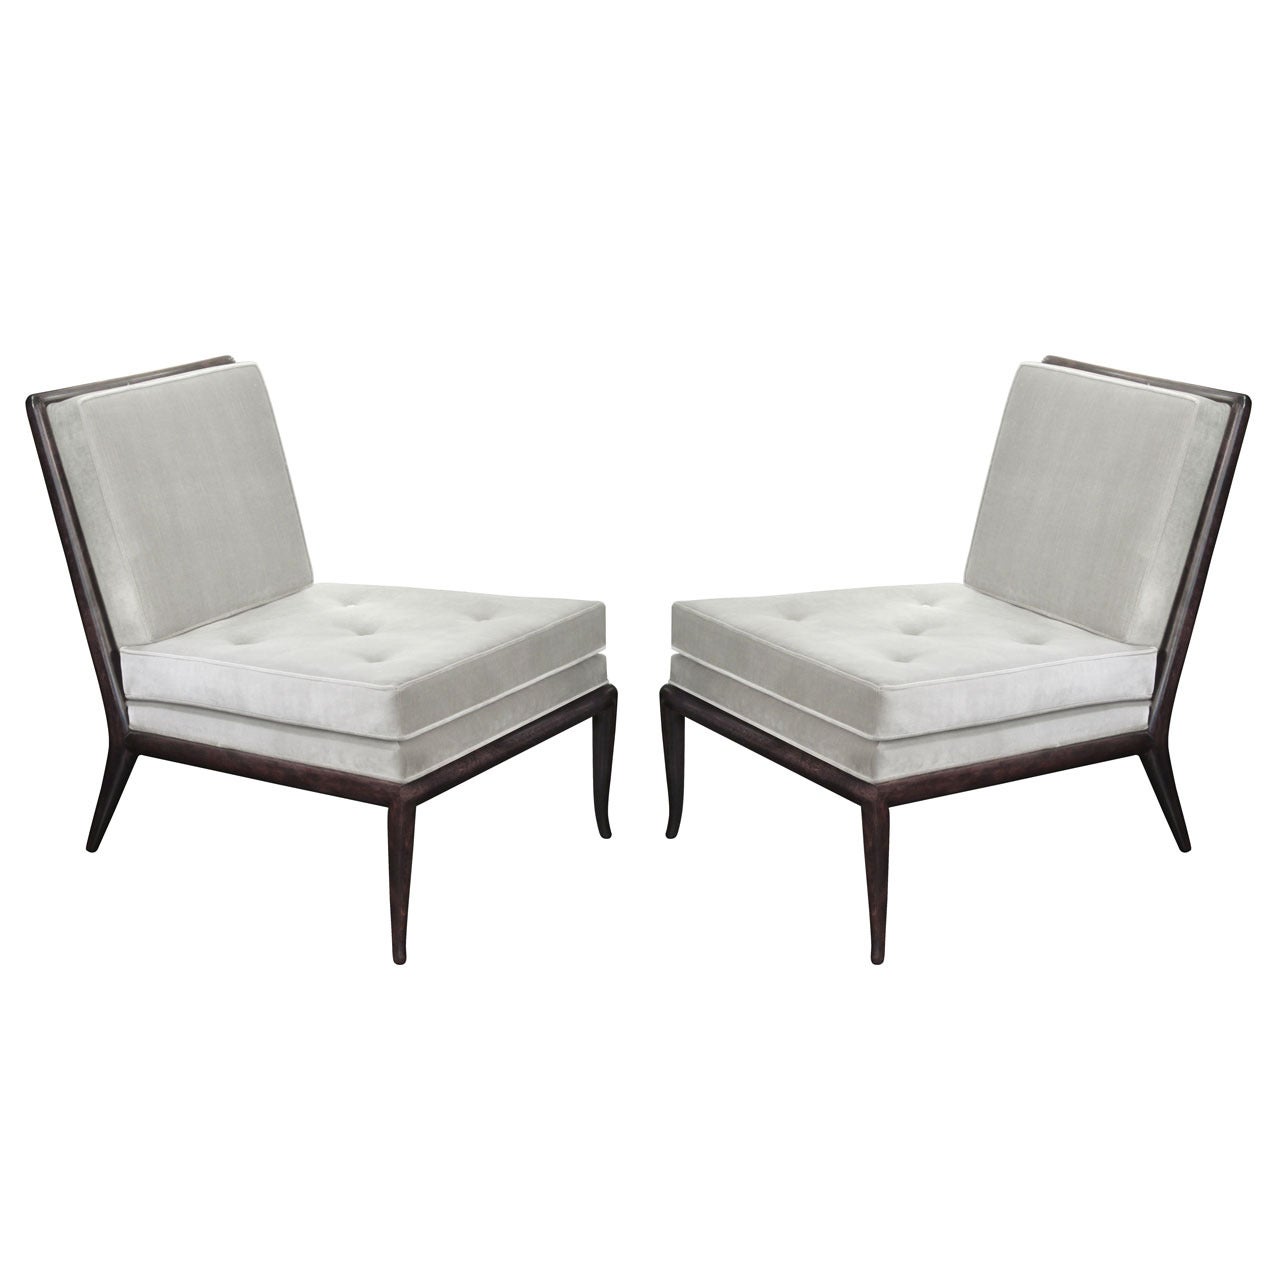 Pair of Elegant Slipper Chairs by T.H. Robsjohn-Gibbings